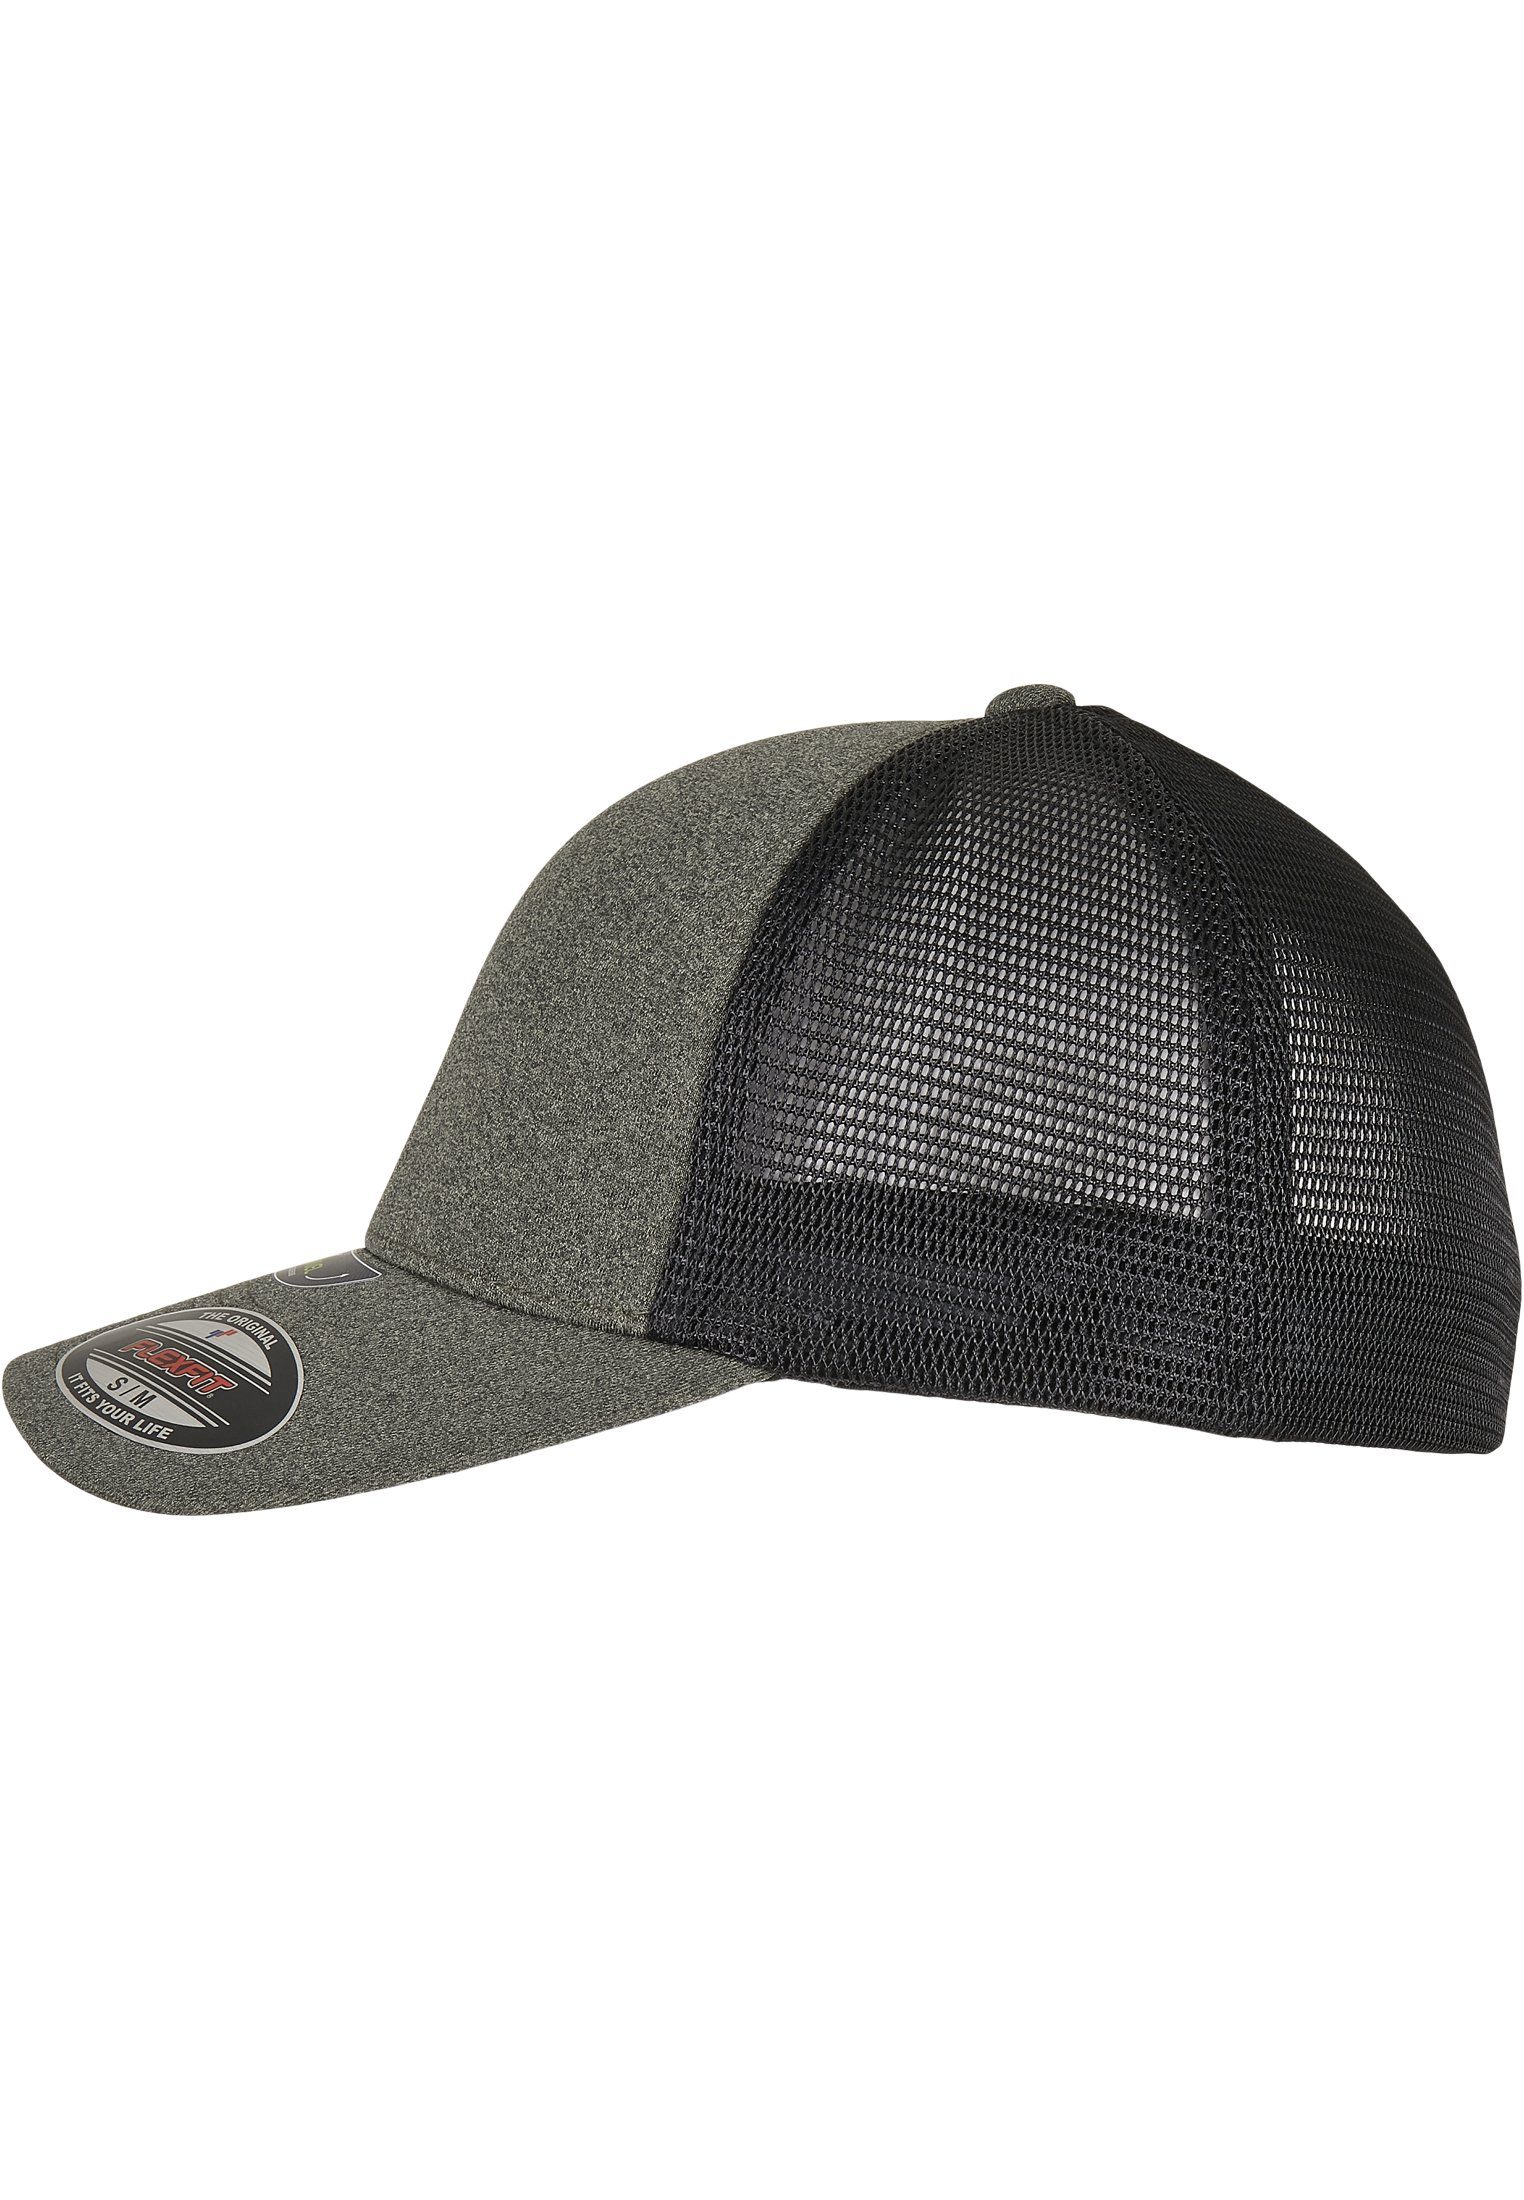 Flexfit Flex Cap FLEXFIT Accessoires CAP olive/black UNIPANEL™